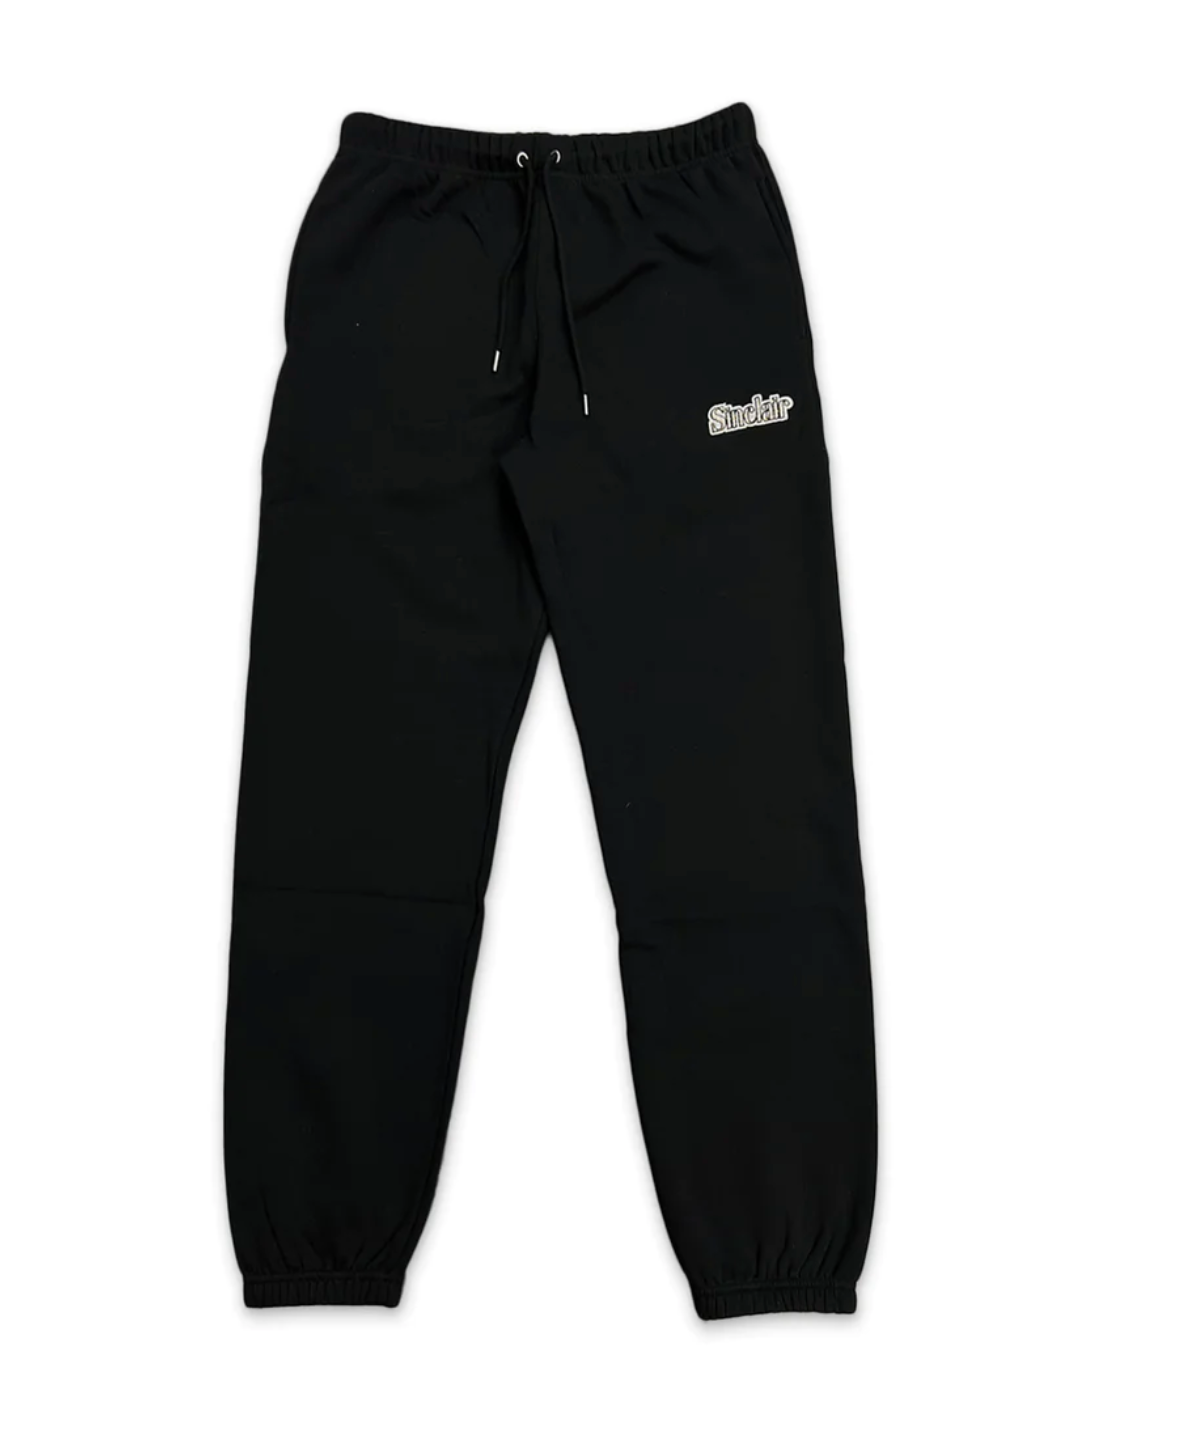 Sinclair Black VVS Sweatpants